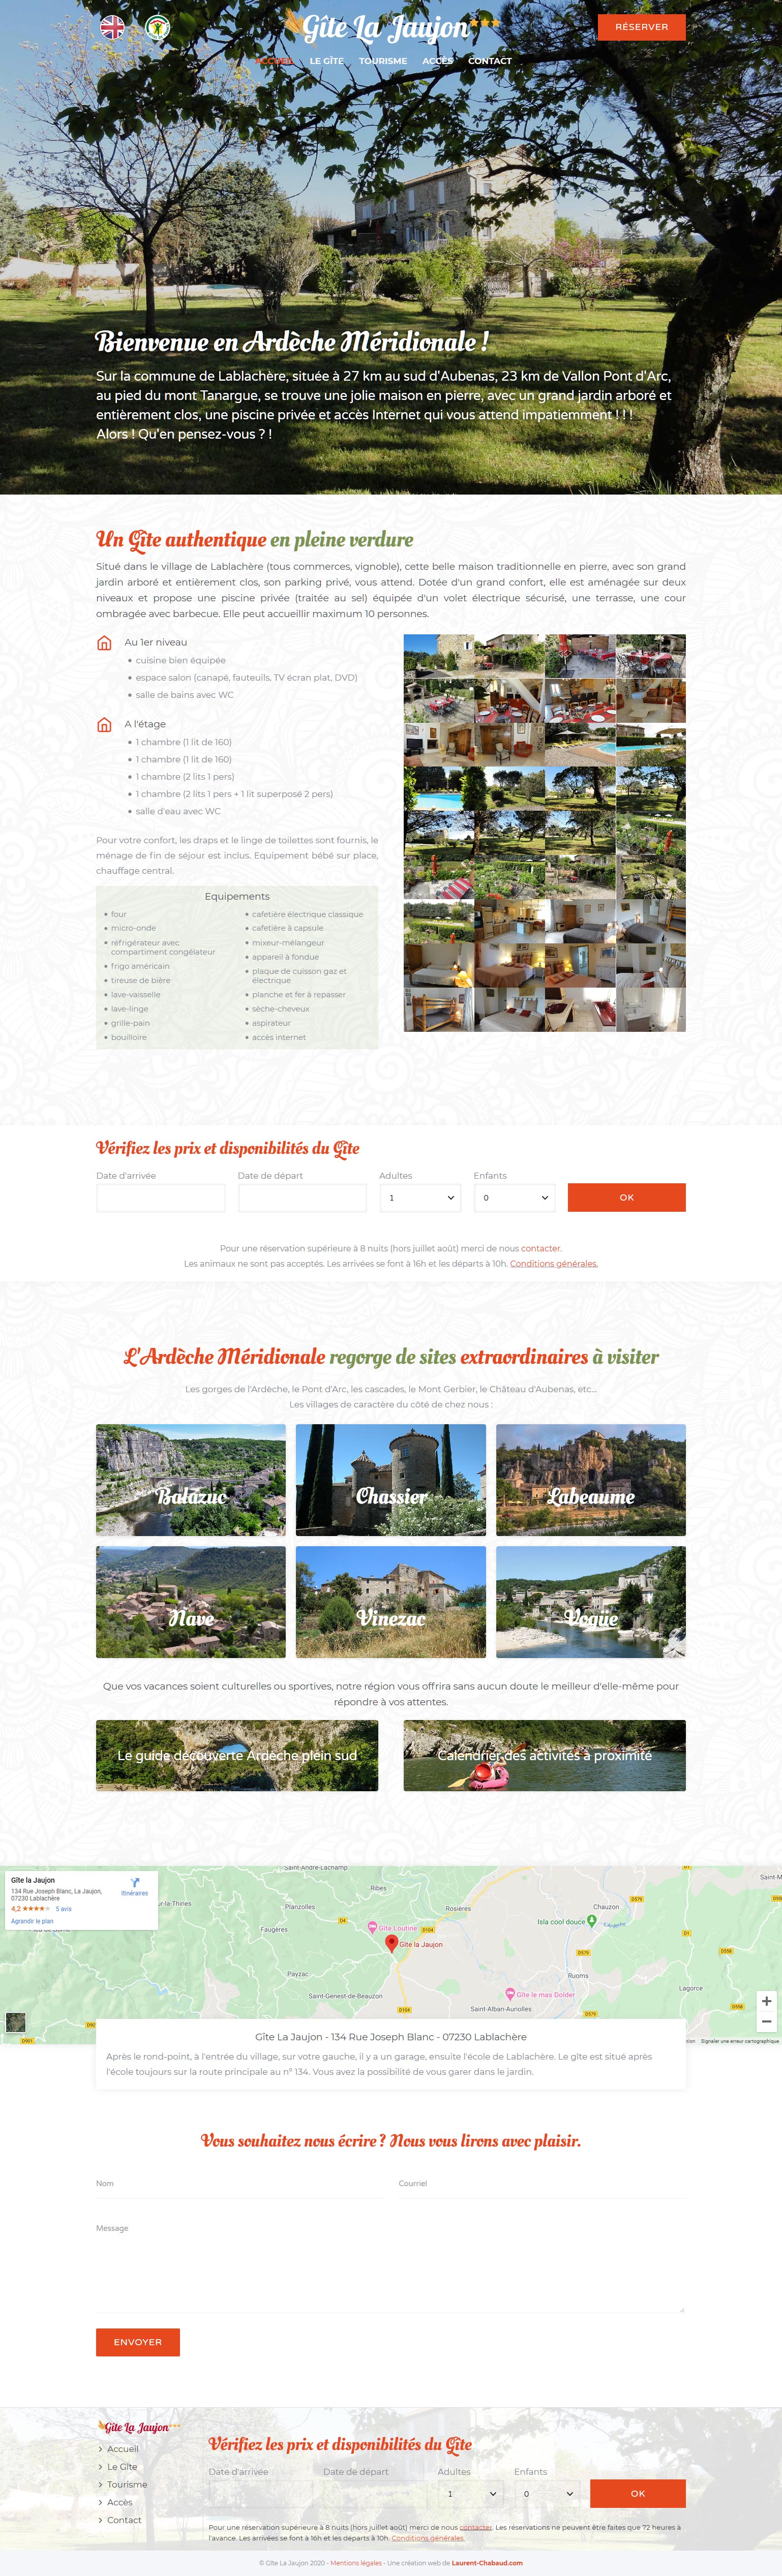 Site web e-commerce réservation Gîte La Jaujon - Web design Laurent Chabaud